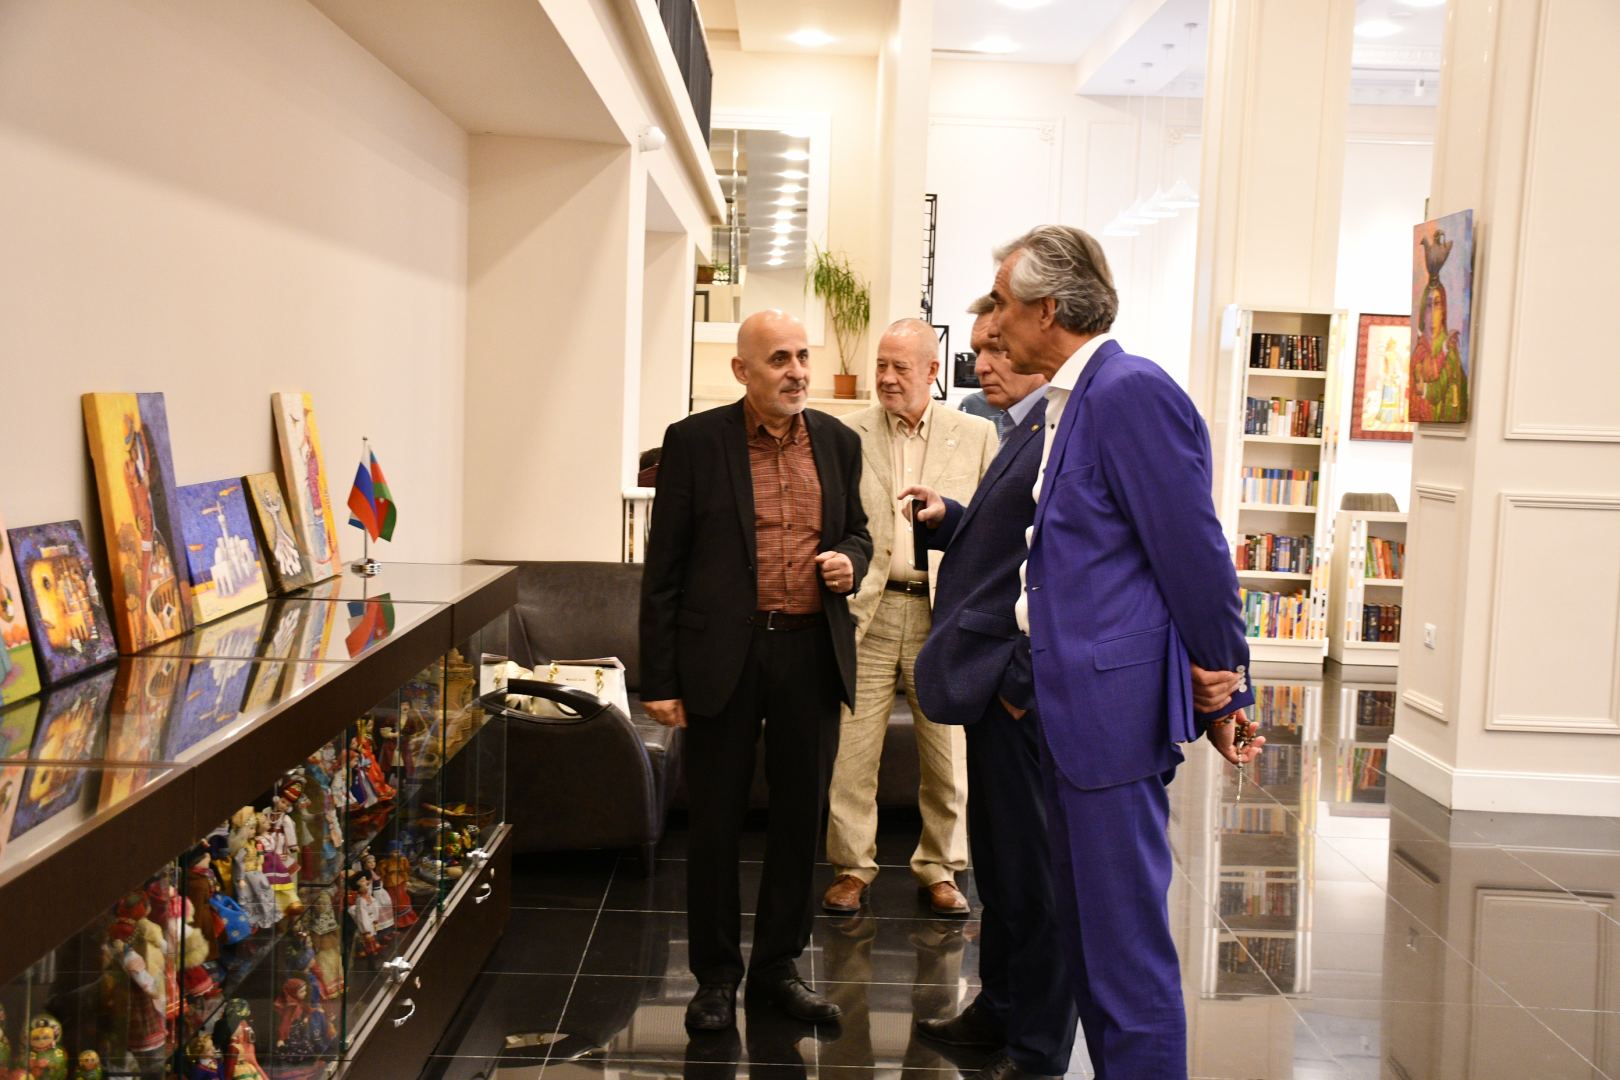 Мистические образы и мощная энергетика – выставка работ Эльдара Бабазаде в Баку (ФОТО)